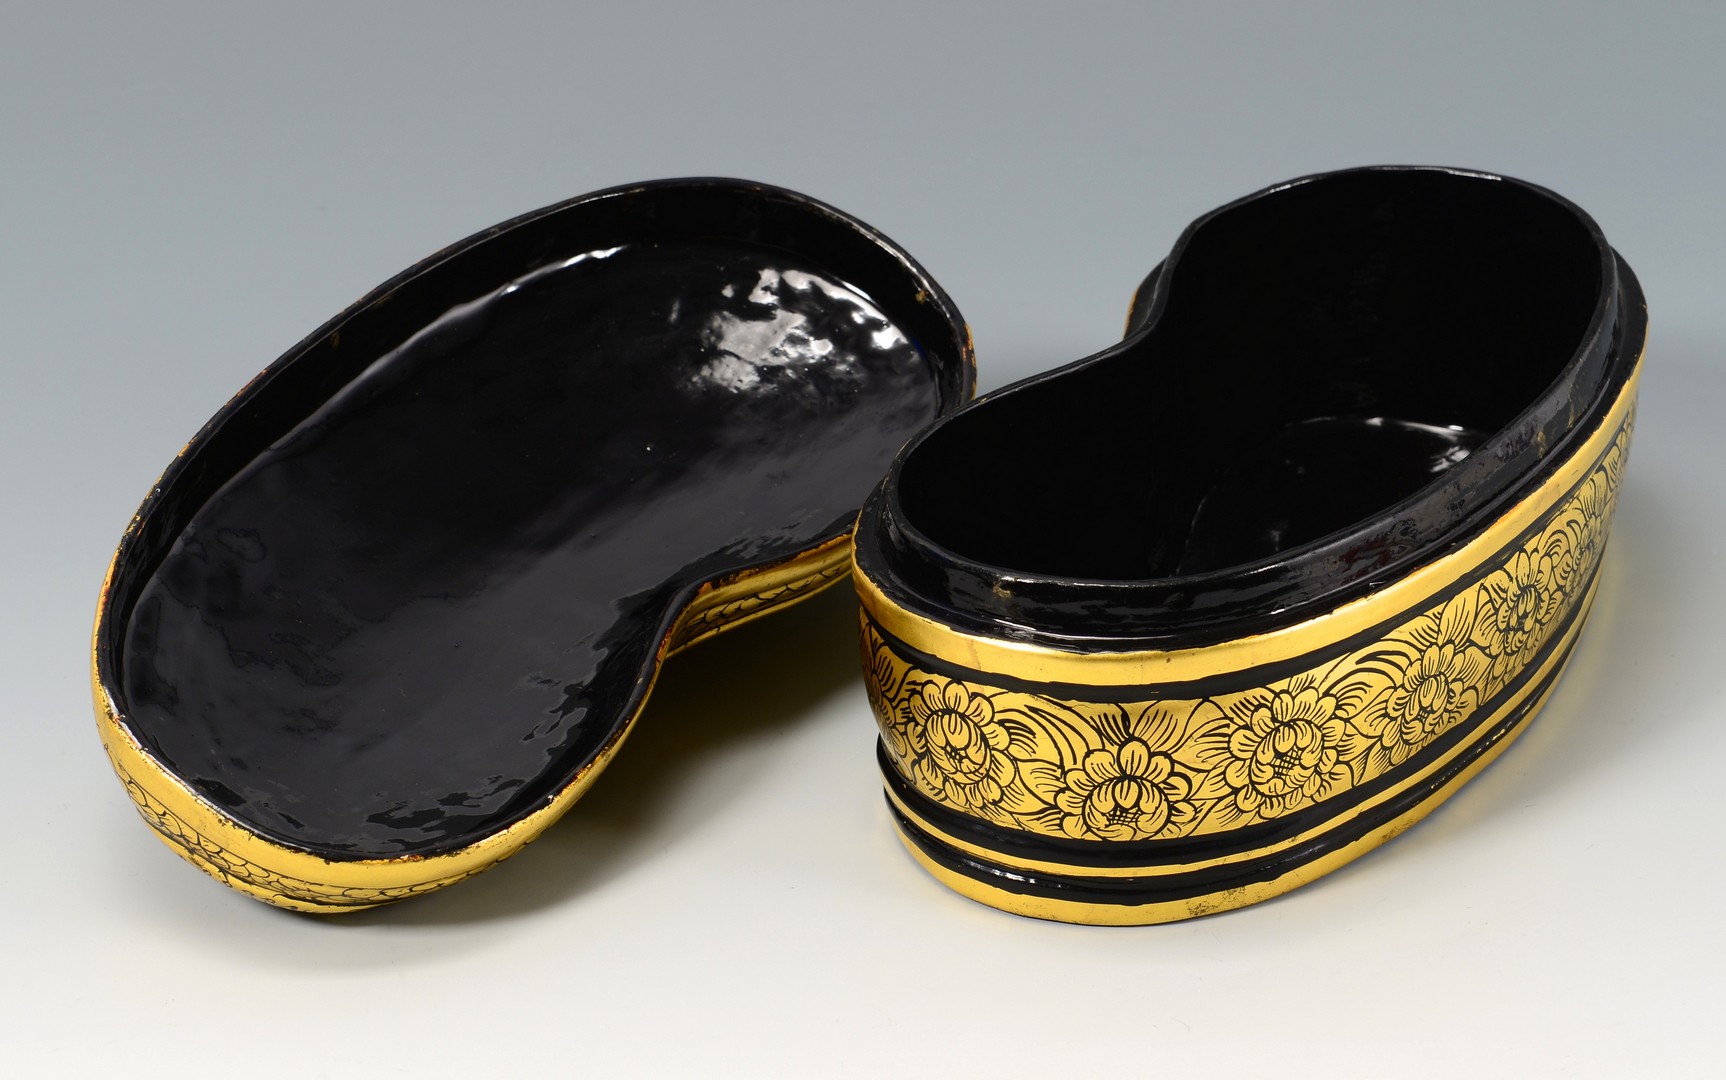 Lot 396: Asian Gilt Lacquer Boxes & Celadon Bowl, 5 items